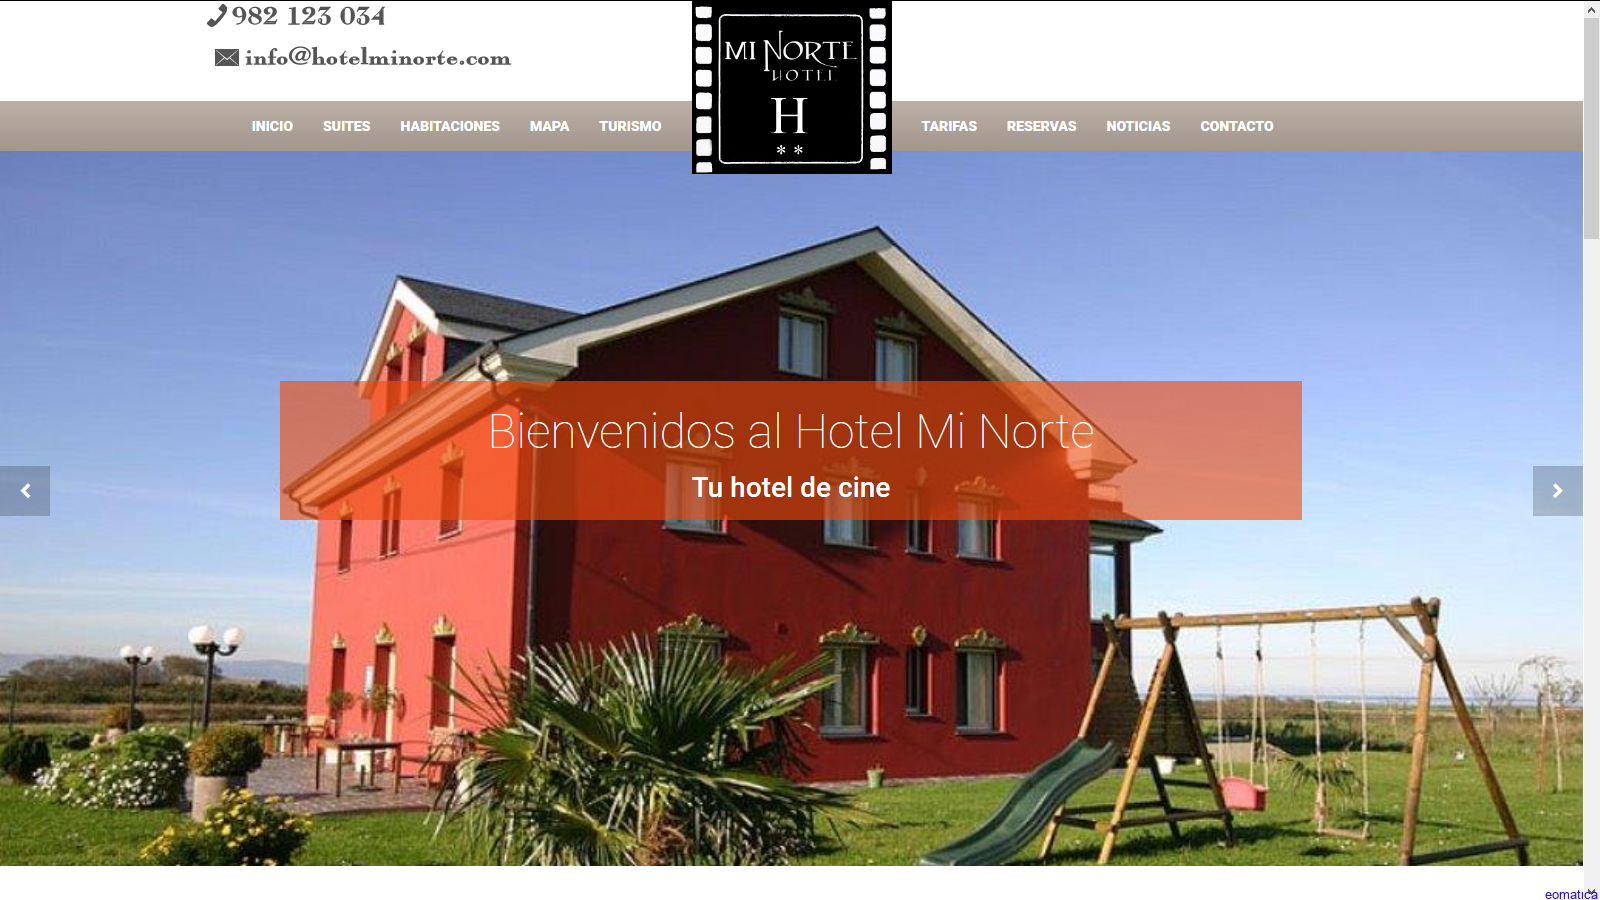 hotelminorte_1540096456.png